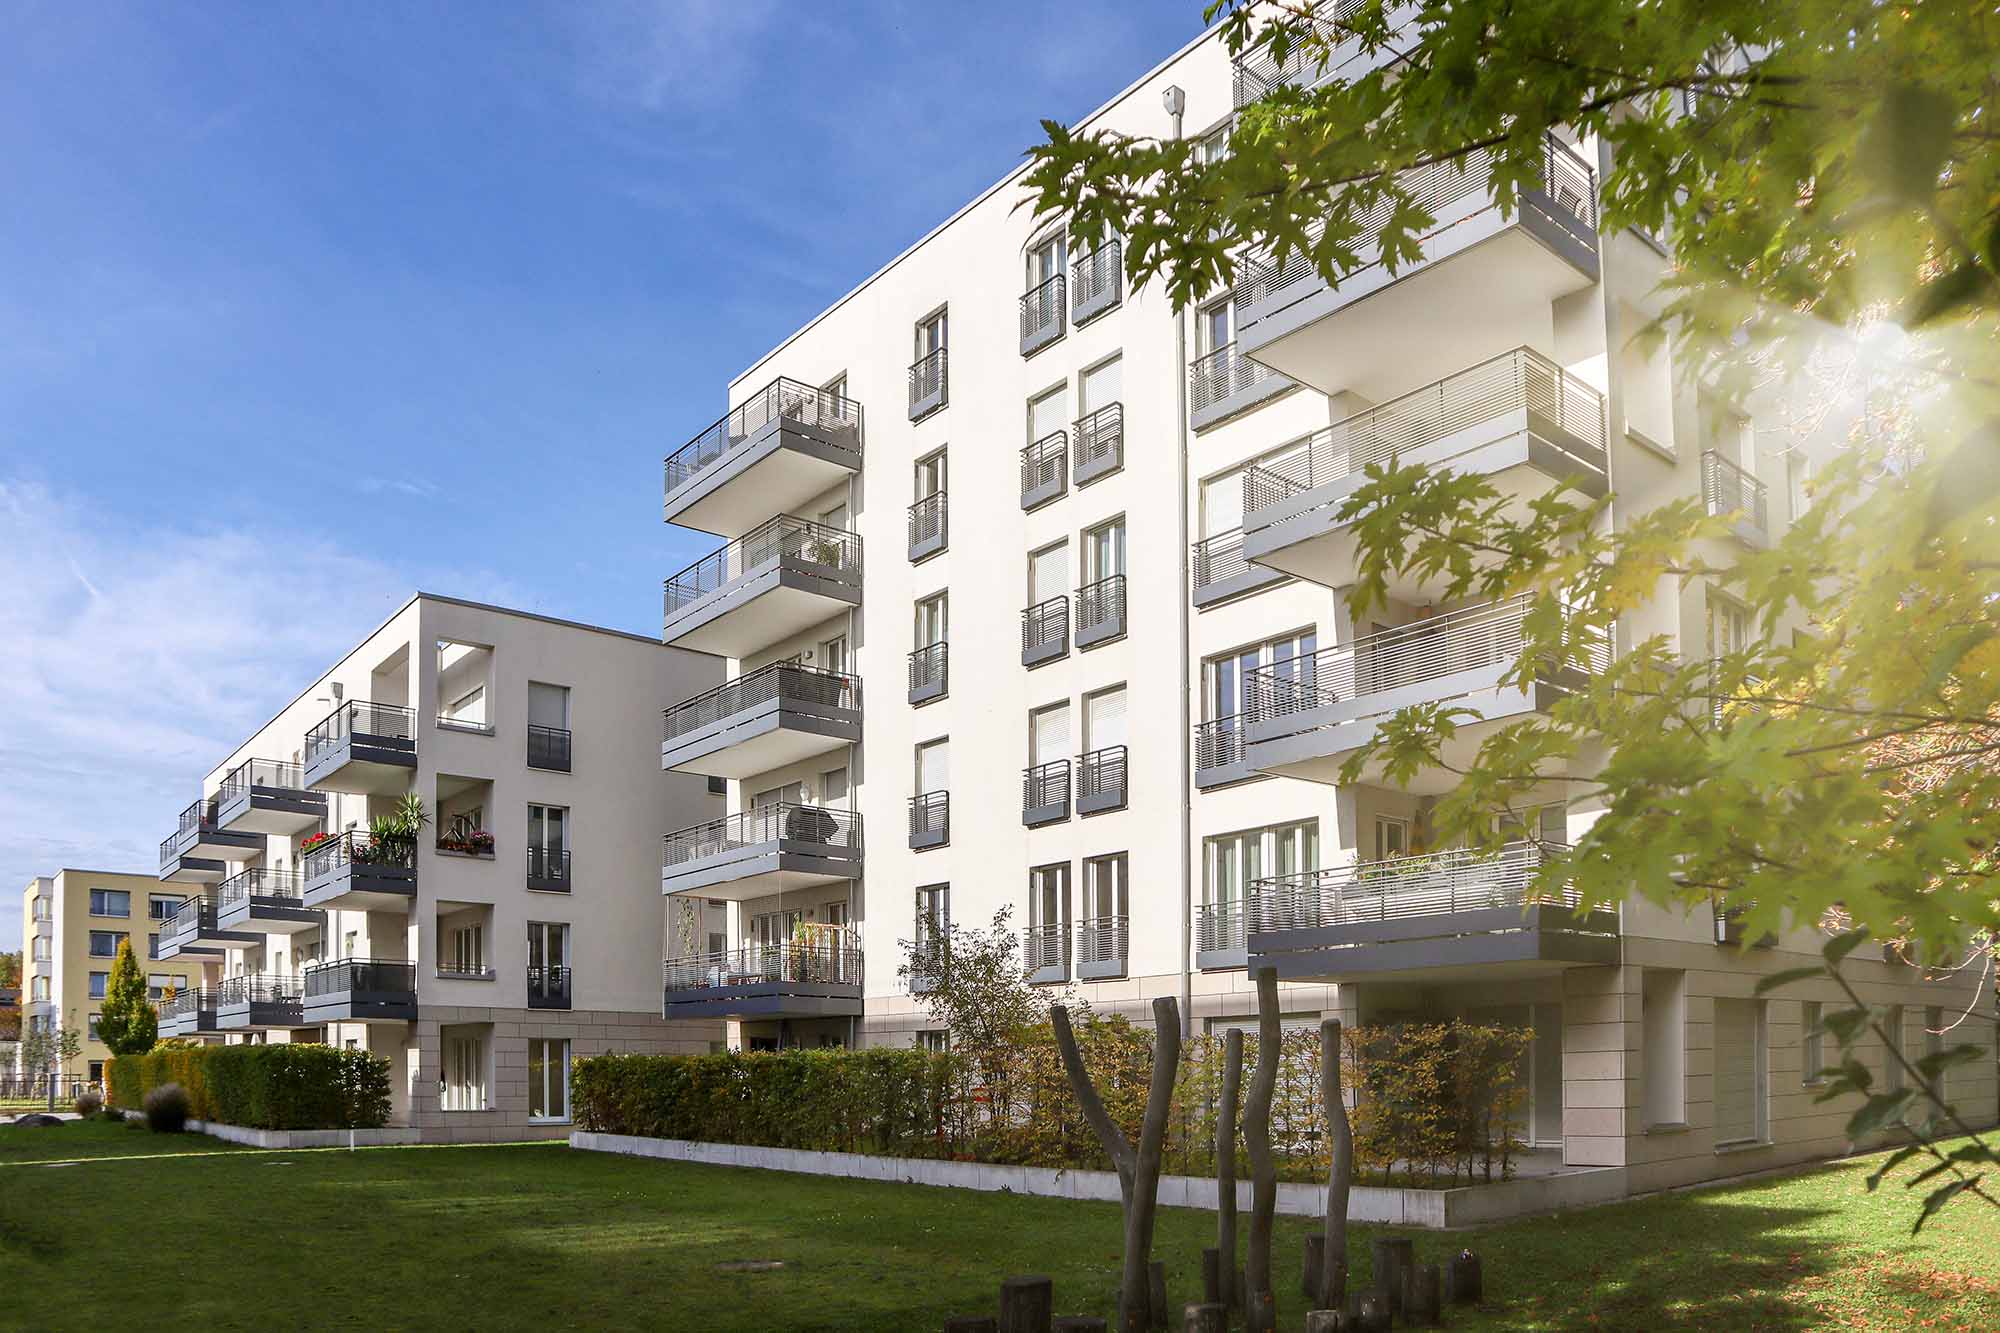 Horizon AM lance Performance Pierre 5 pour soutenir le financement de l’immobilier résidentiel neuf en France